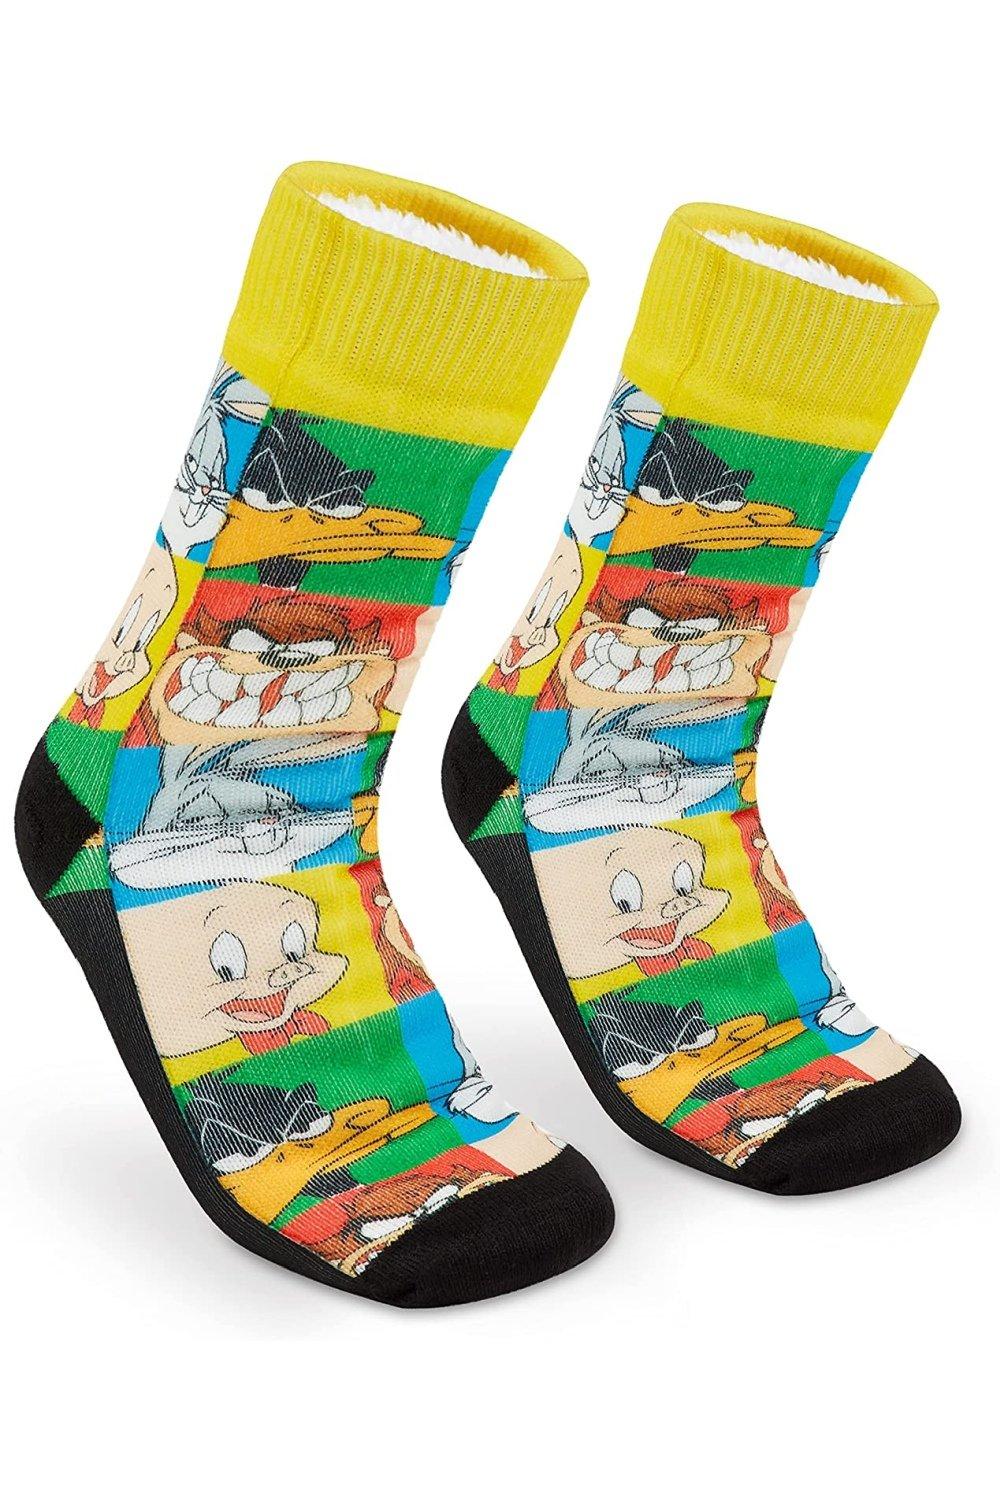 Пушистые носки Looney Tunes, мультиколор носки мужские из забавные носки для животных хлопка с изображением еды пришельцев планет